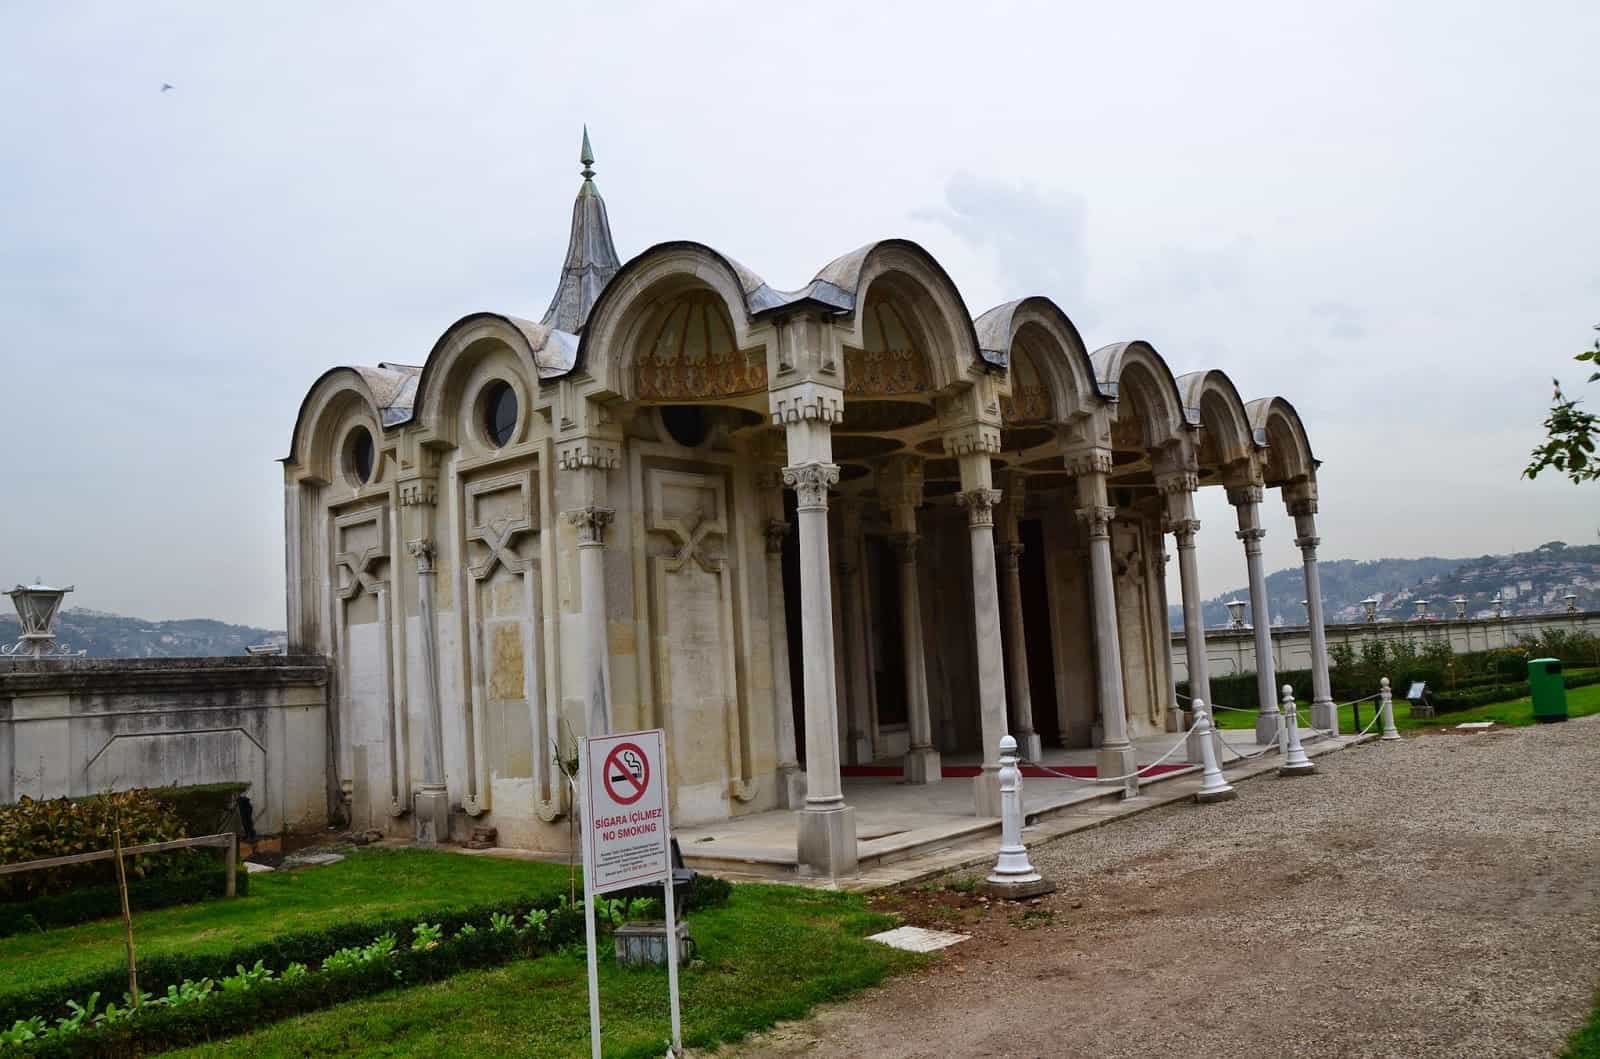 Seaside Pavilion at Beylerbeyi Sarayı in Beylerbeyi, Istanbul, Turkey